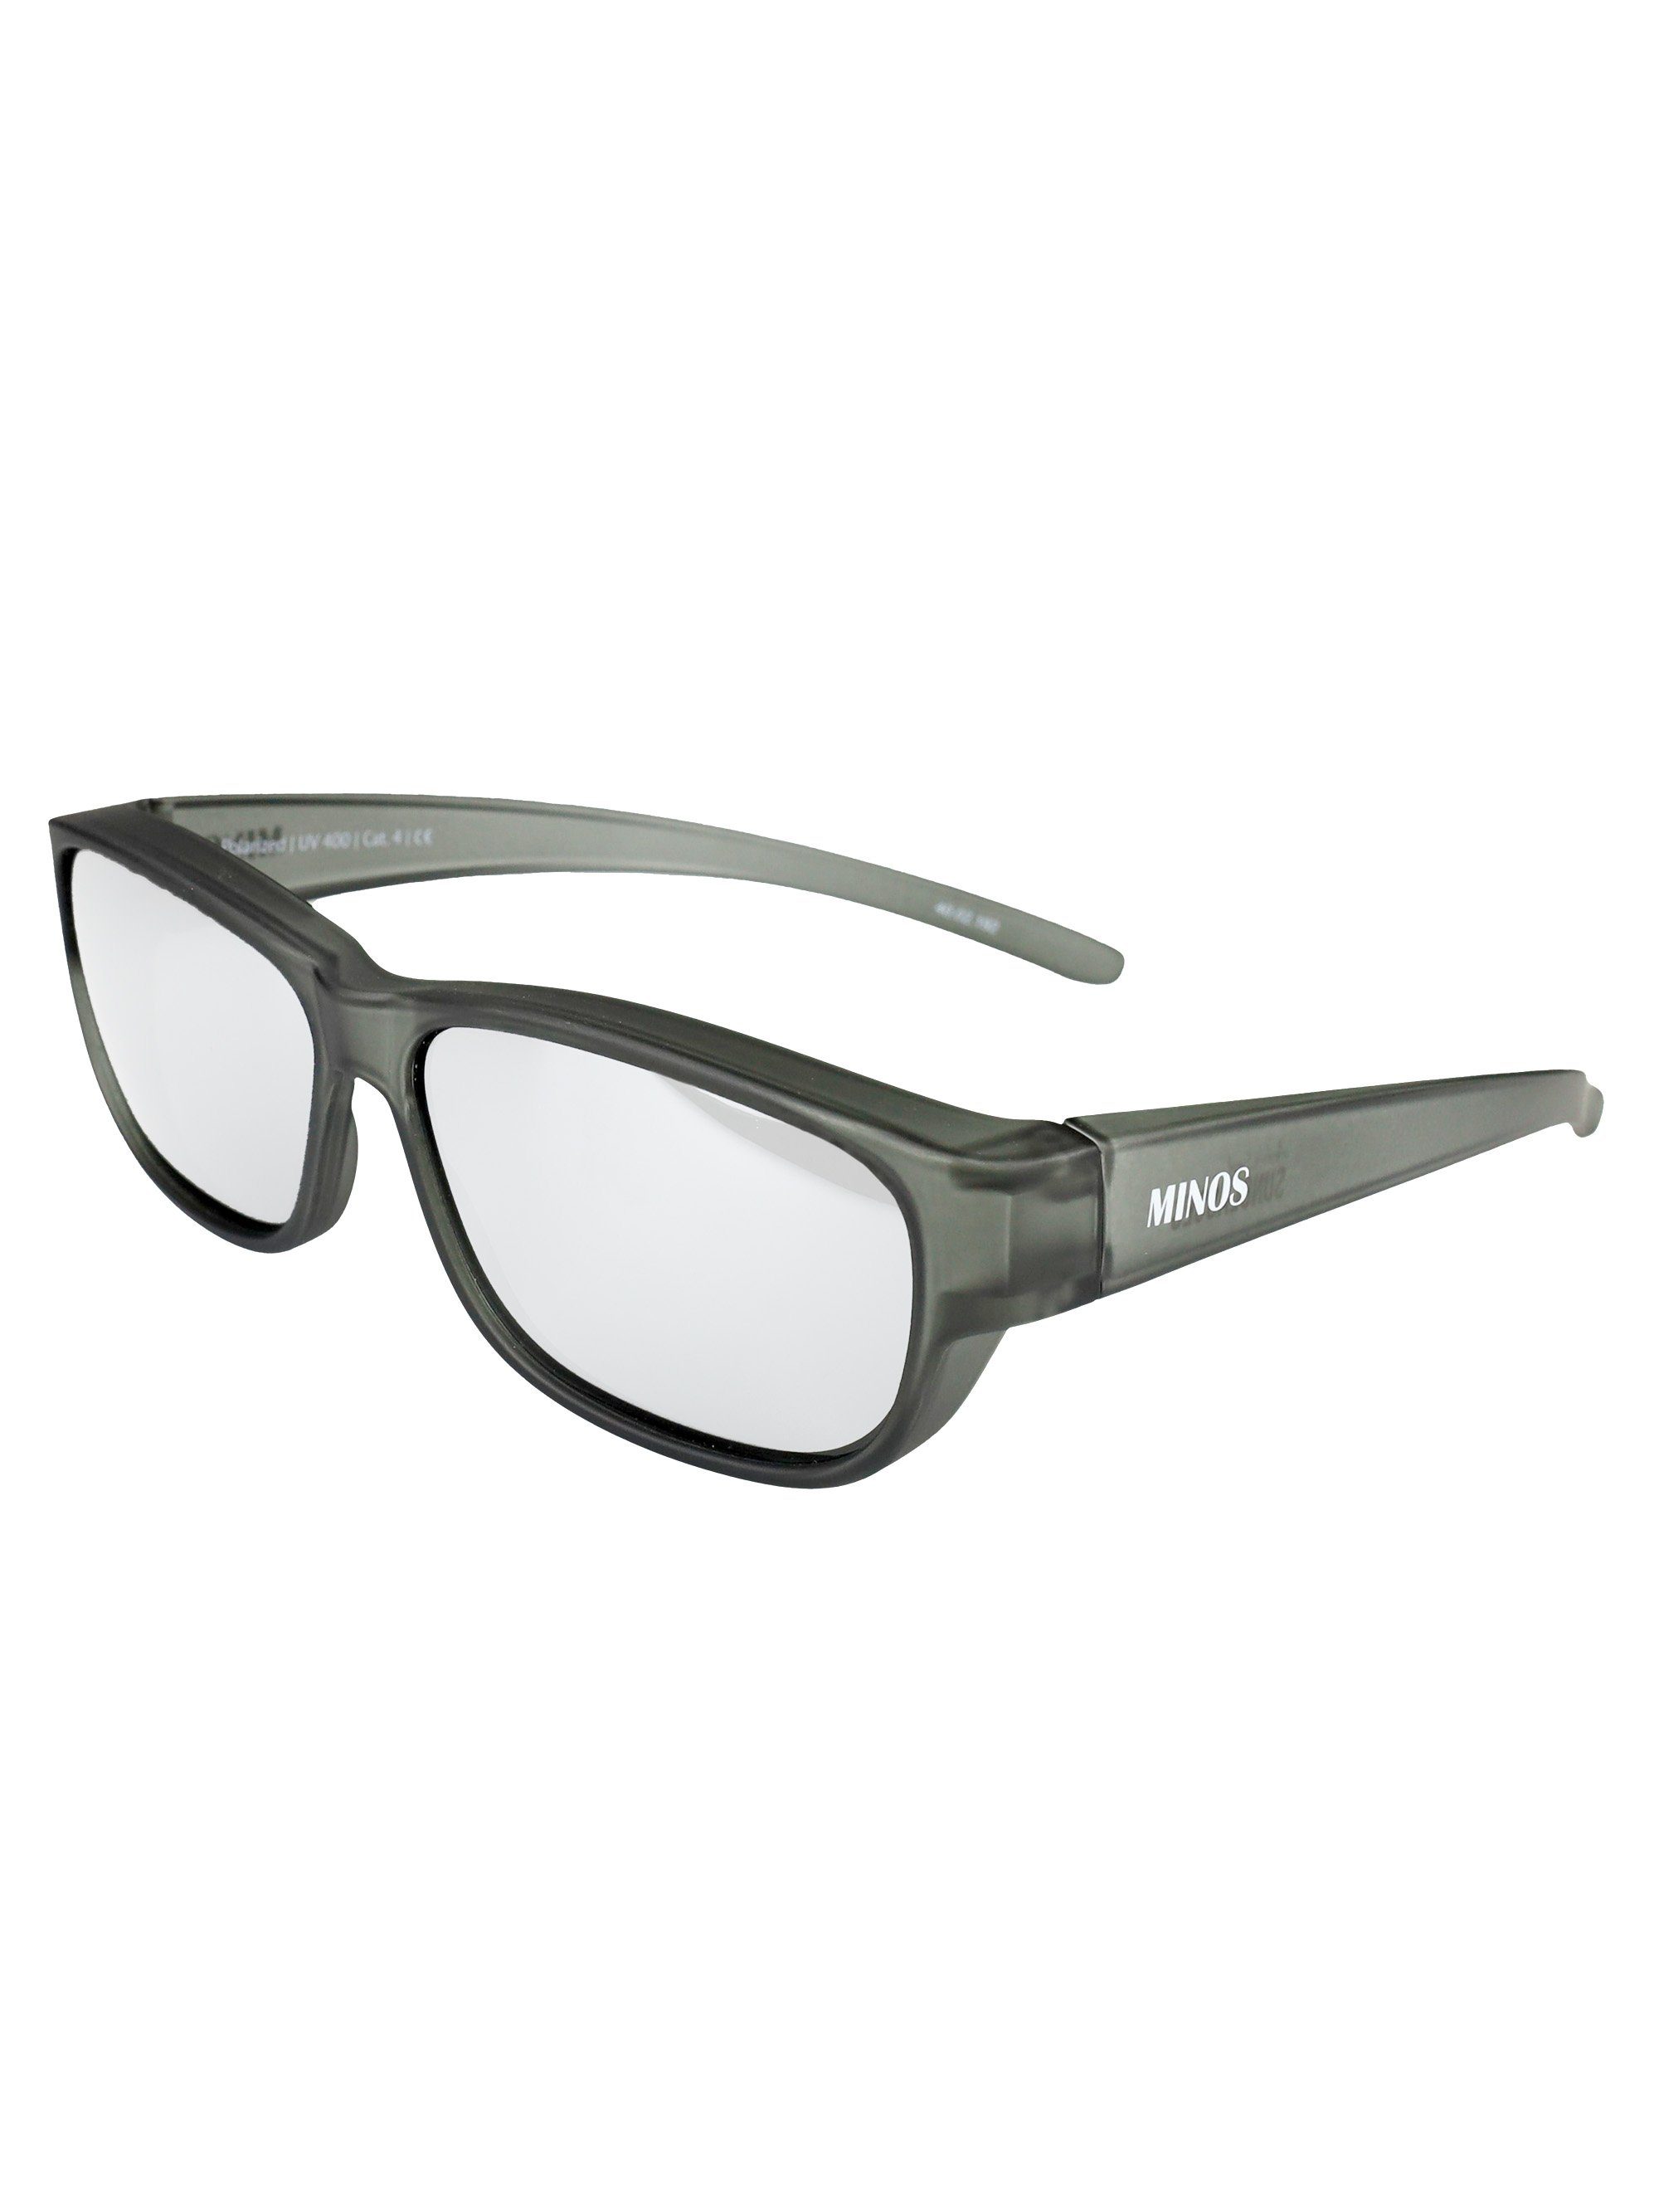 (inklusive SUNGLASSES Minos Sonnenbrille Schiebebox verspiegelt ActiveSol und Brillenputztuch) Überziehsonnenbrille schwarz